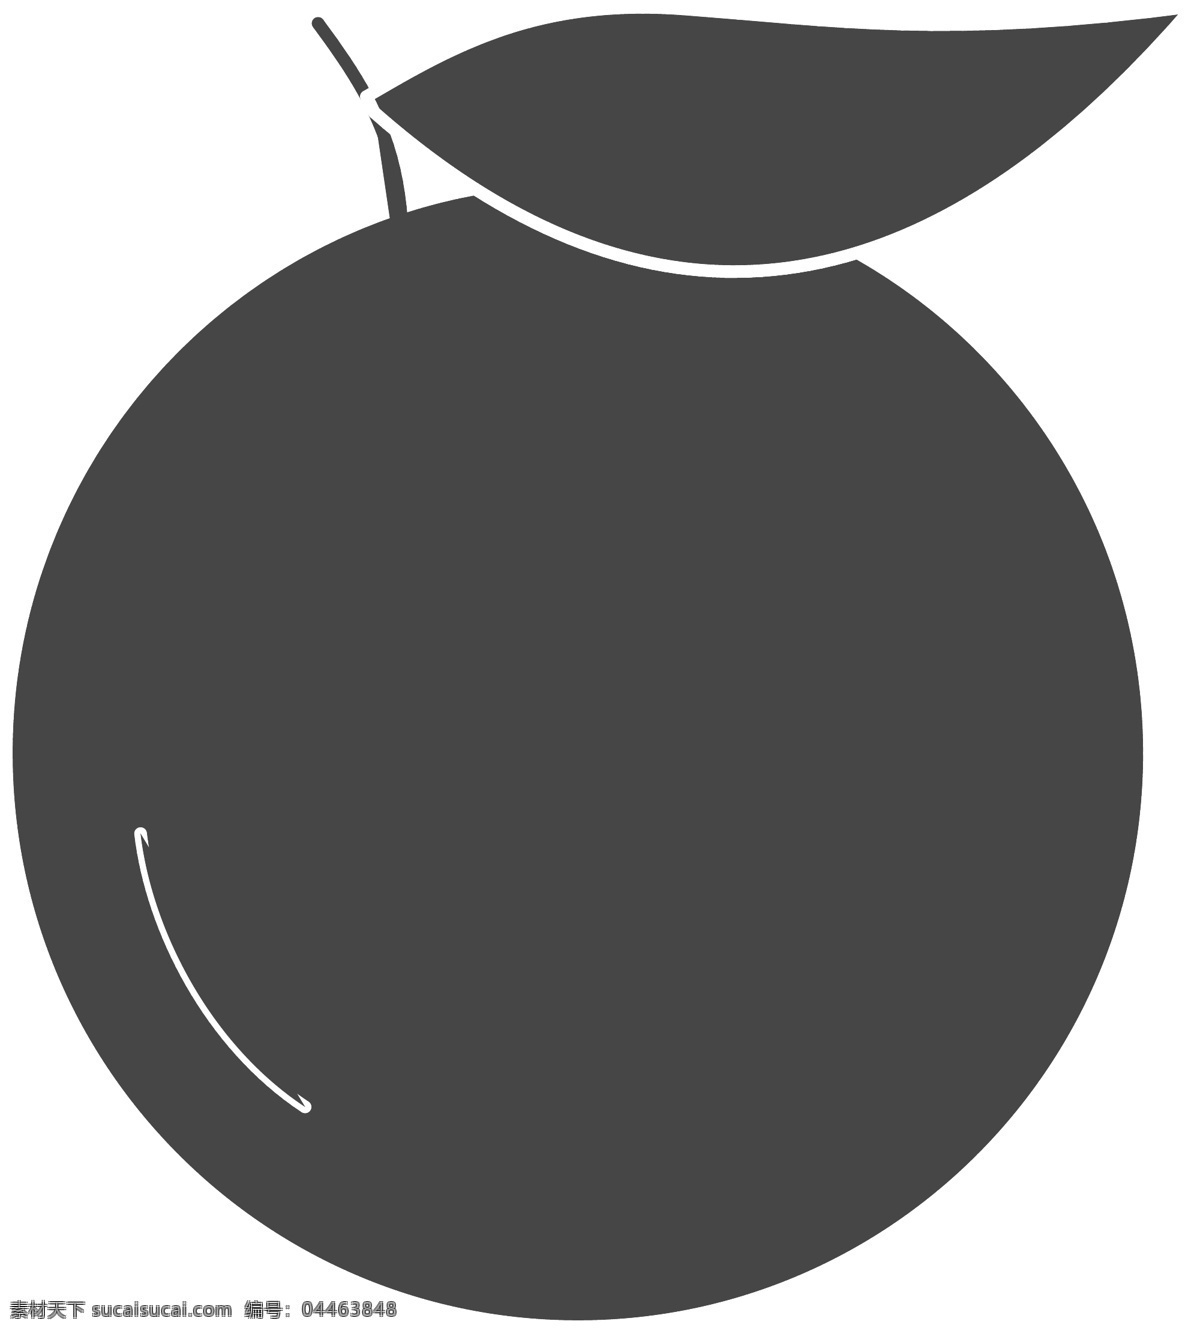 卡通 桔子 水果 免 抠 图 桔子水果 ui应用图标 水果图标 网页图标 简易的水果 卡通图案 卡通插画 免抠图